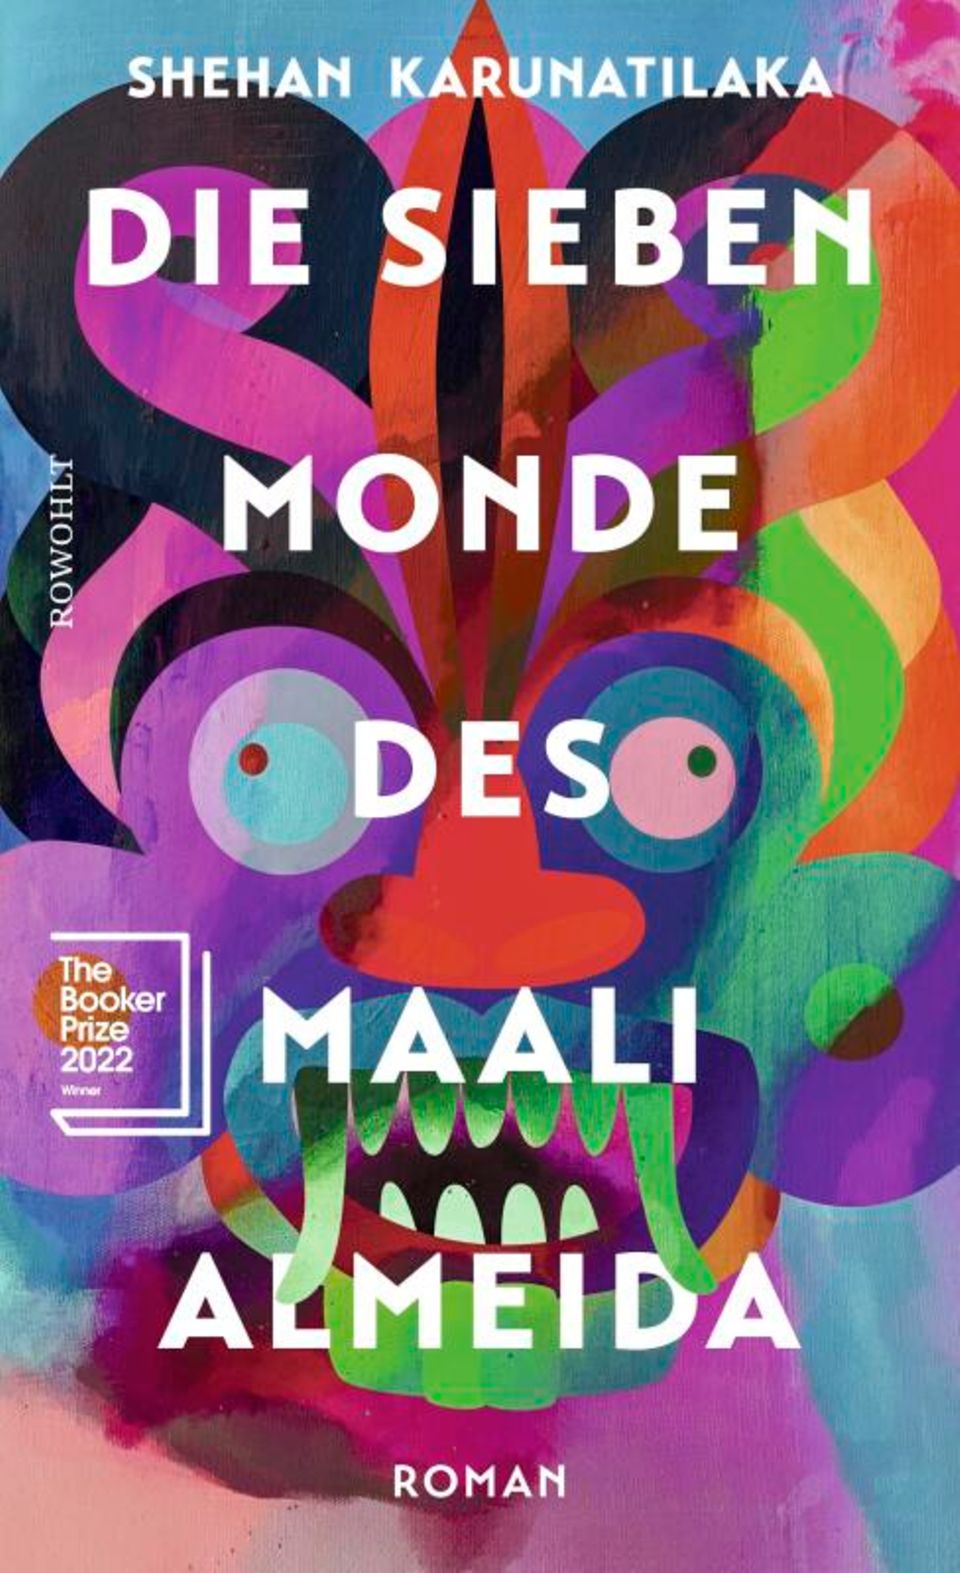 Buchtipps der Redaktion: Buchcover "Die sieben Monde des Maali Almeida"